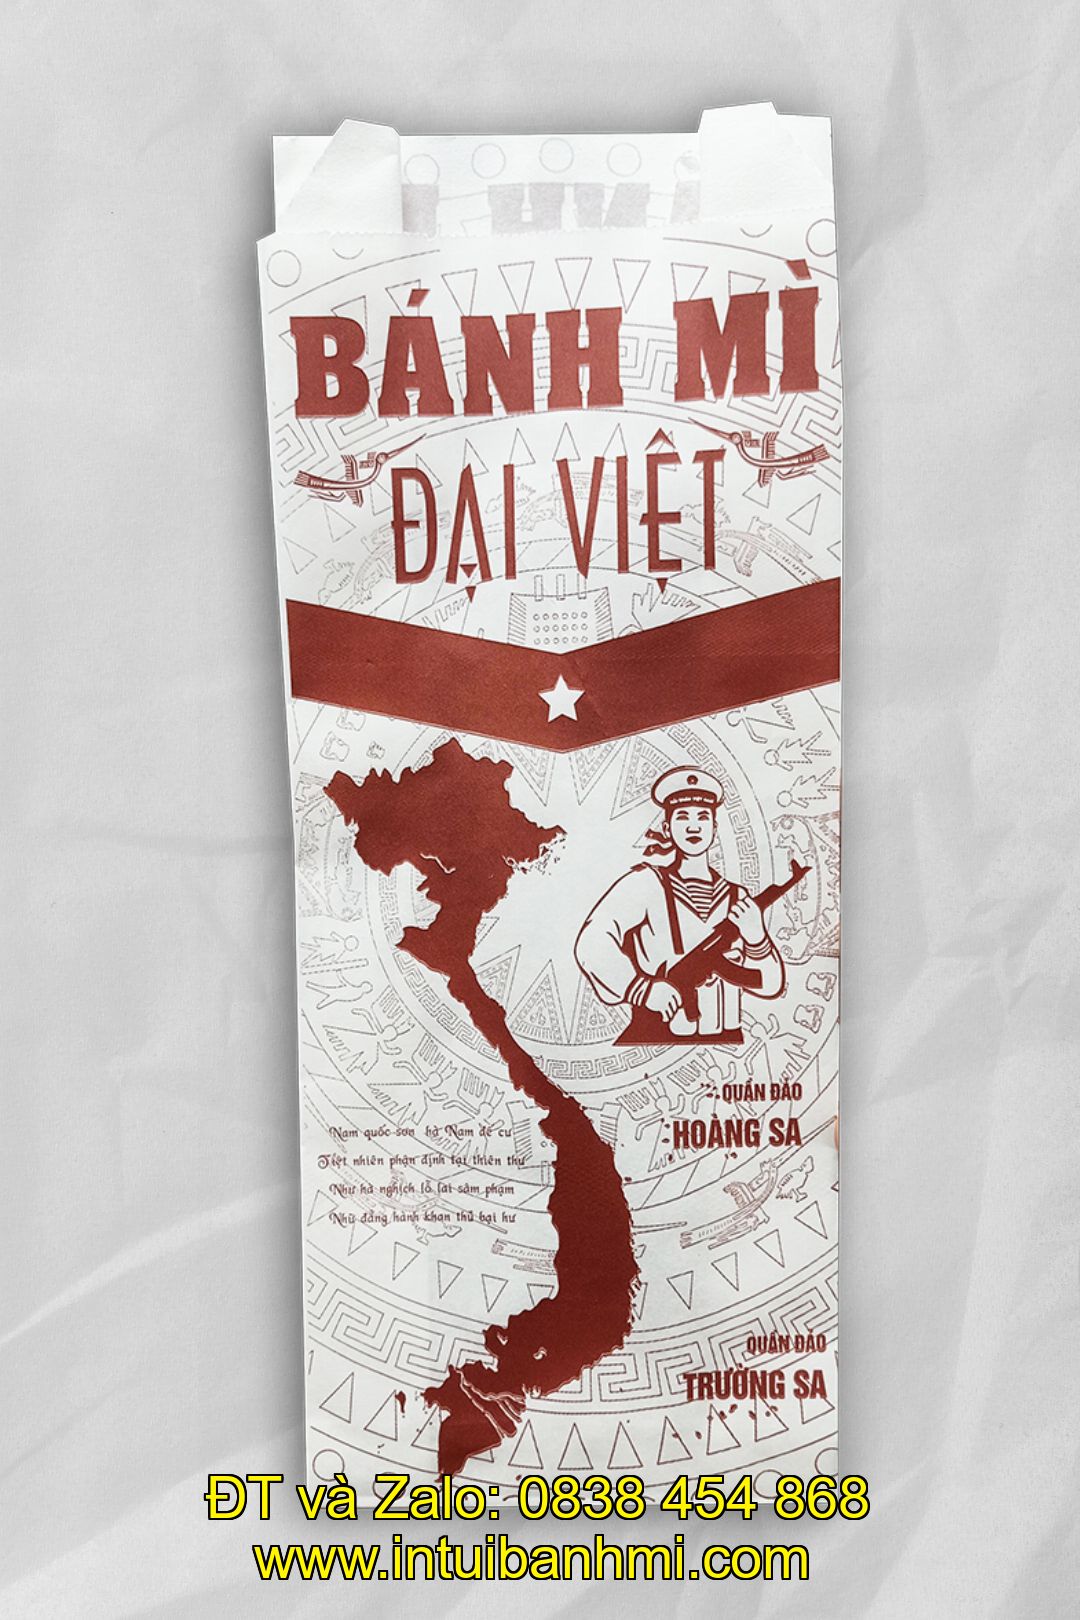 In túi đựng bánh mì hấp dẫn, giá rẻ tại tayninh.intuibanhmi.com